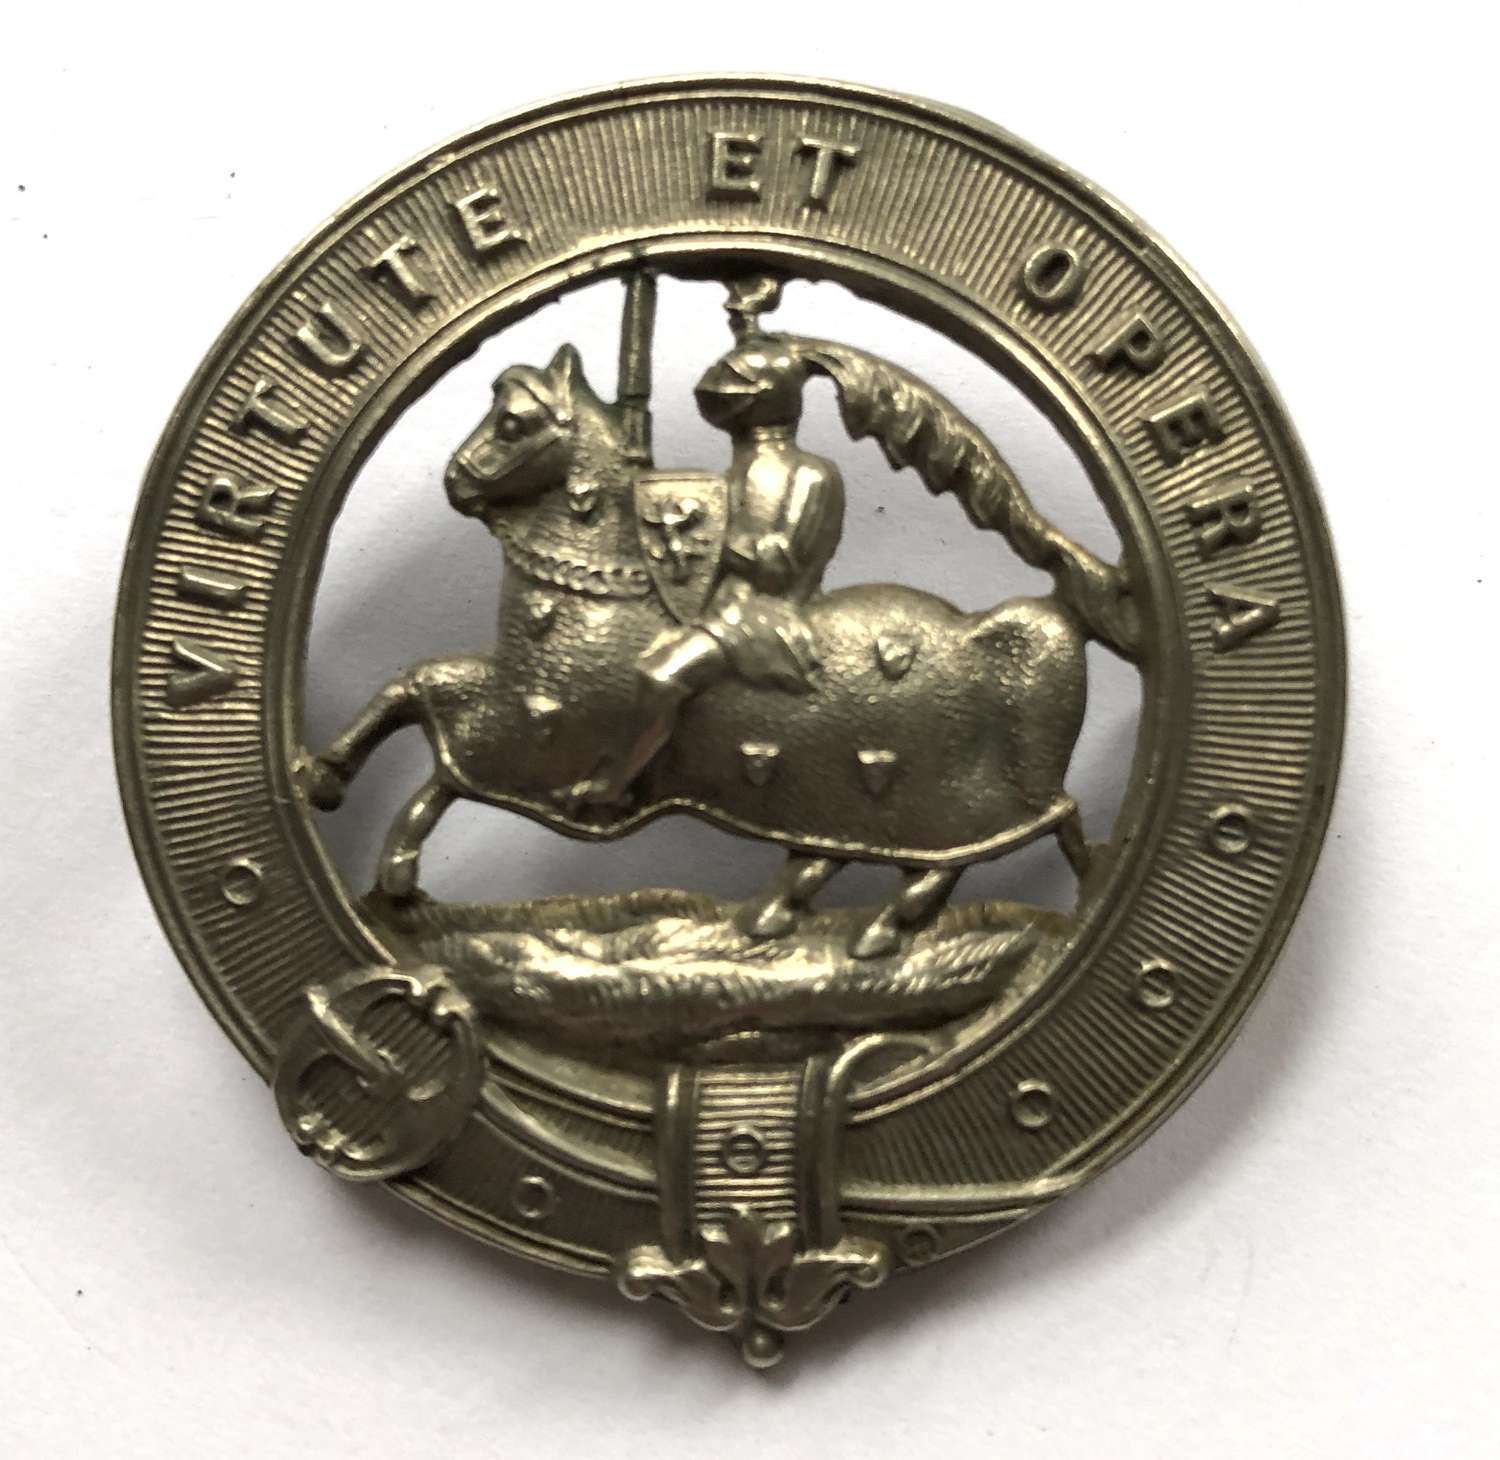 Scottish. 6th (Fifeshire) VB Black Watch glengarry badge c1887-1908